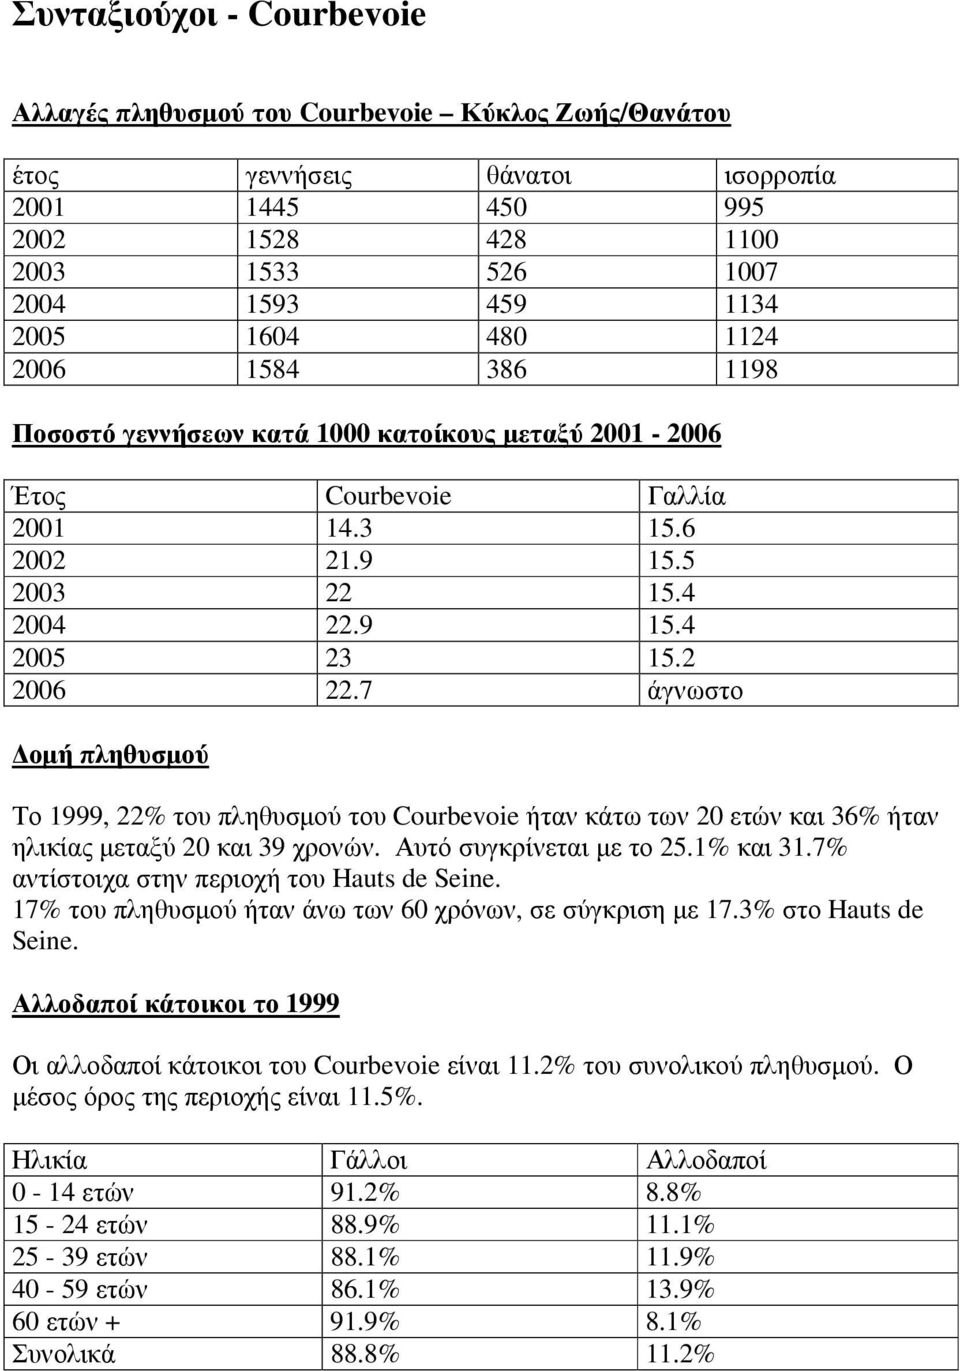 7 άγνωστο οµή πληθυσµού Το 1999, 22% του πληθυσµού του Courbevoie ήταν κάτω των 20 ετών και 36% ήταν ηλικίας µεταξύ 20 και 39 χρονών. Αυτό συγκρίνεται µε το 25.1% και 31.